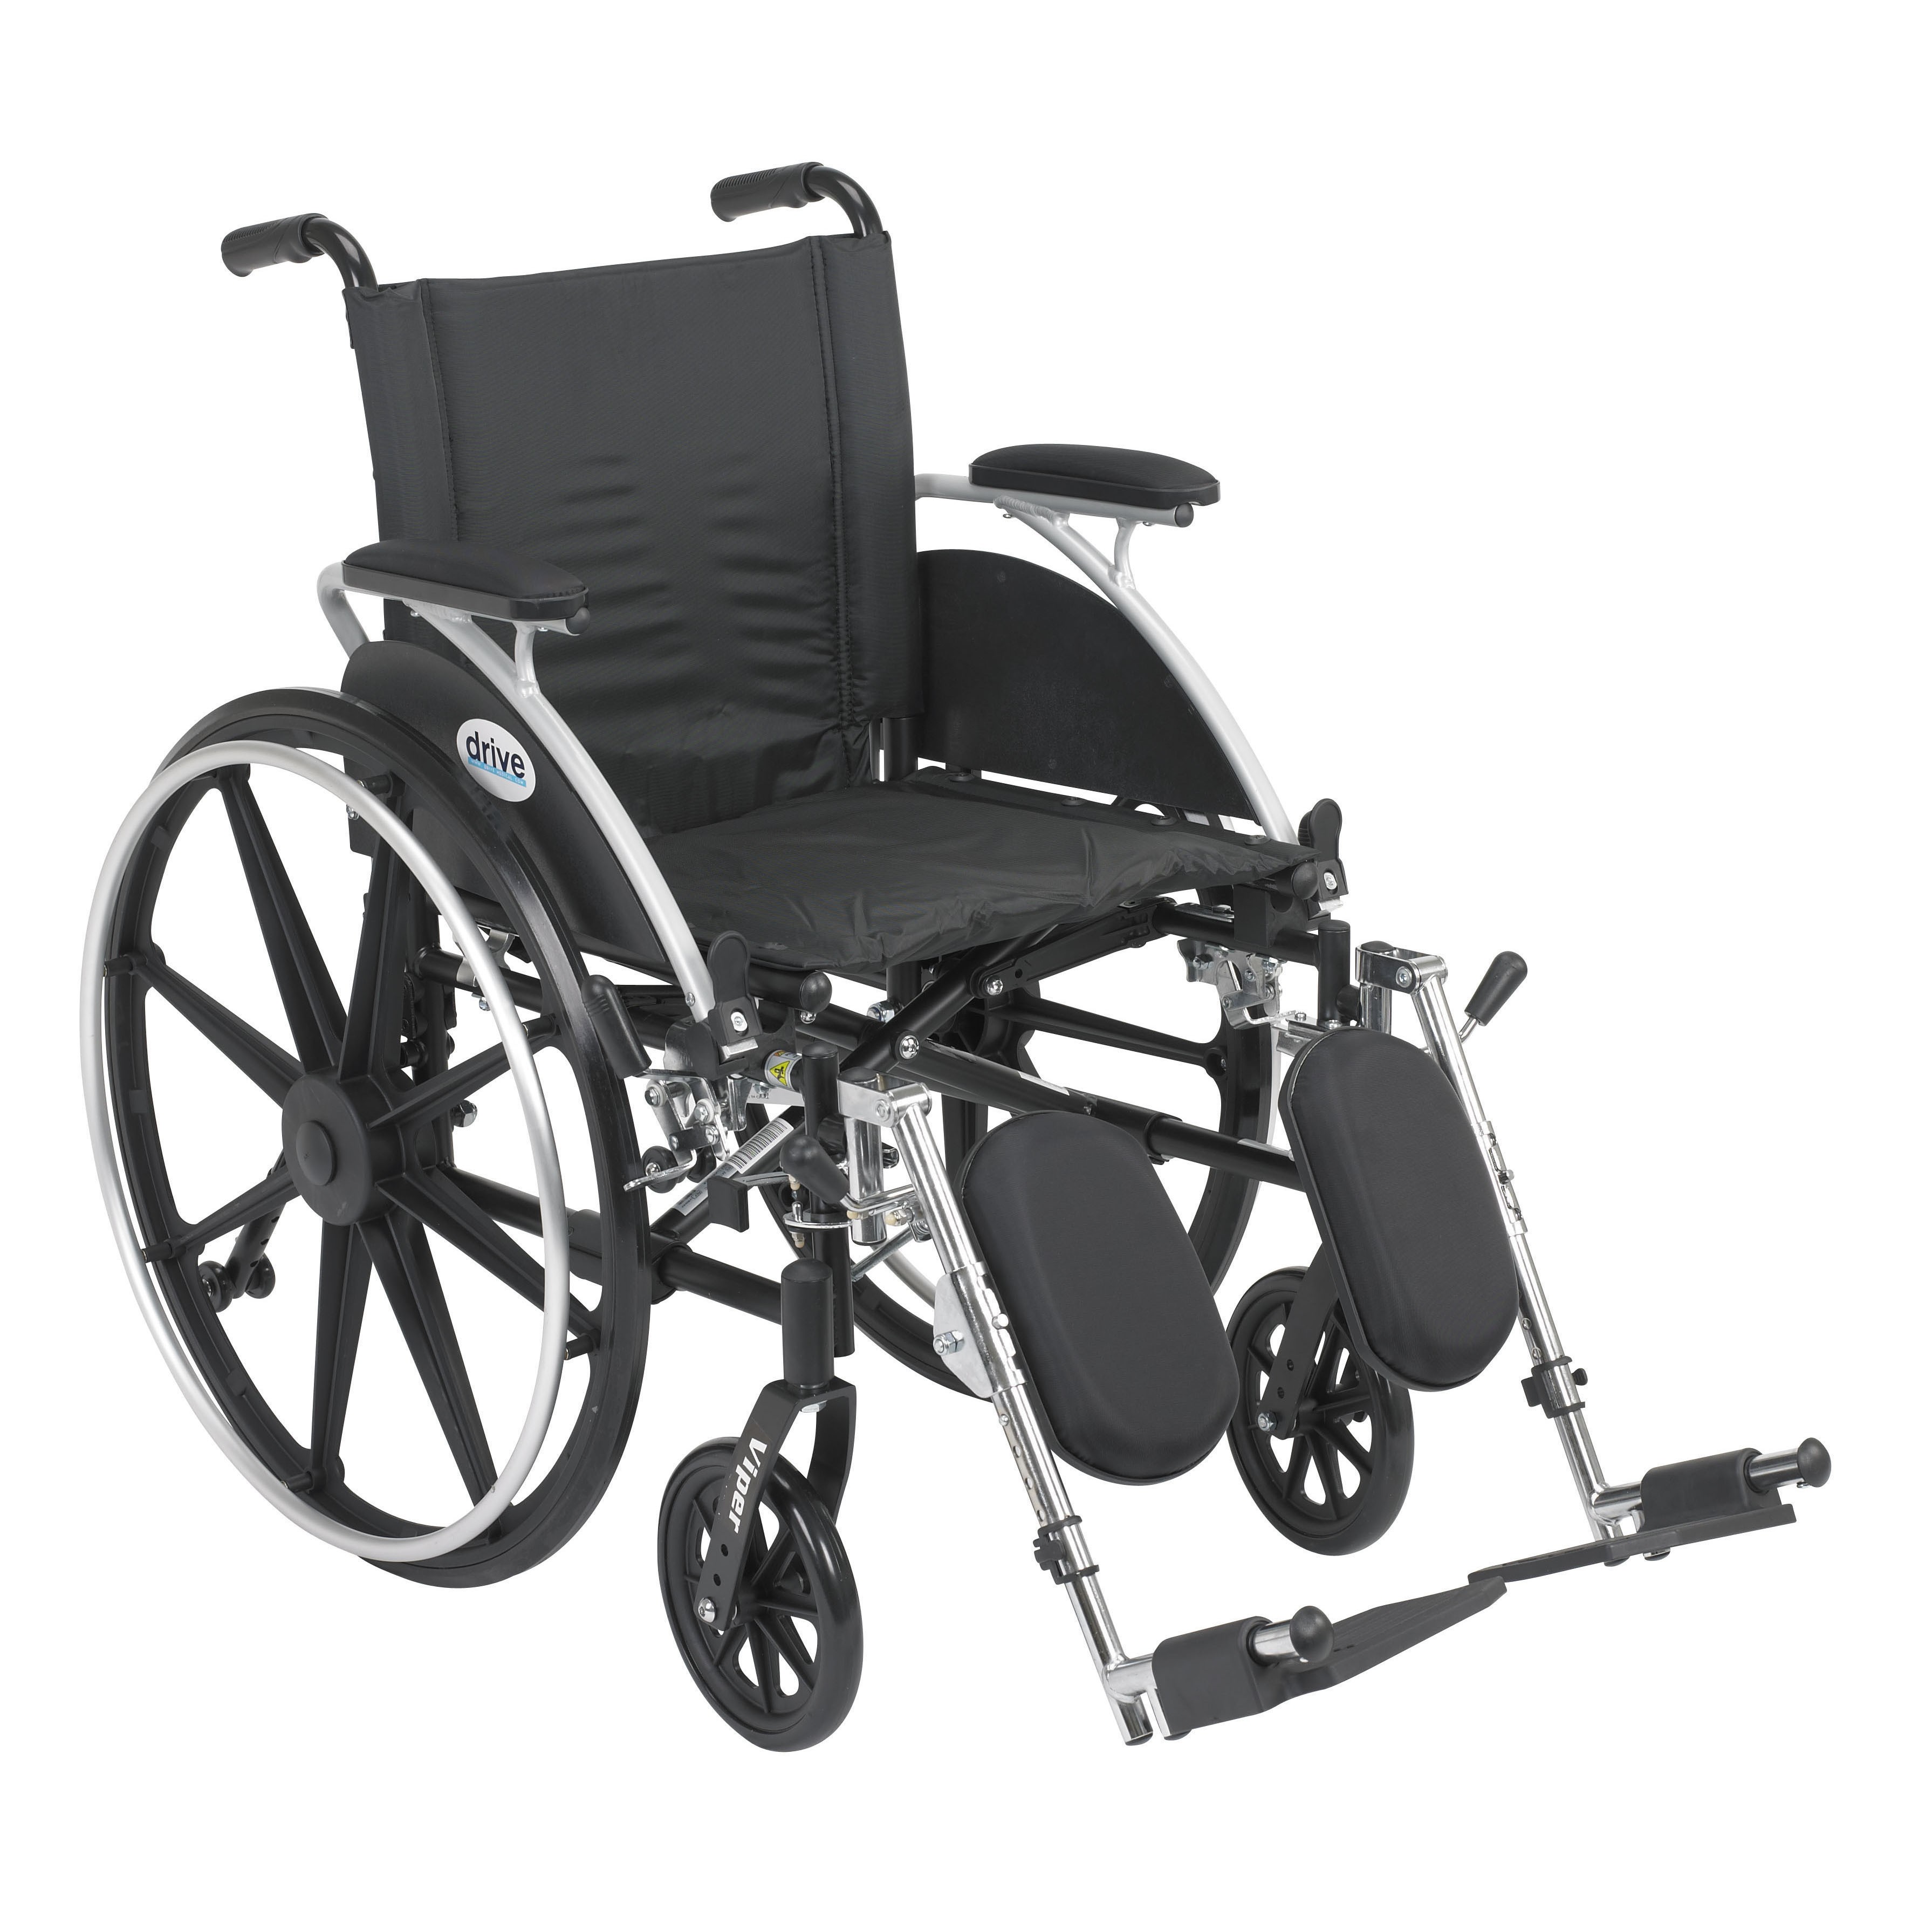 Кресло коляска для инвалида ребенка прогулочная. Кресло-коляска Alpha 20. Кресло коляска h035. ТСР 7-02-01 кресло-коляска с ручным приводом прогулочная. Кресло коляска с ручным управлением для инвалидовкод70101.